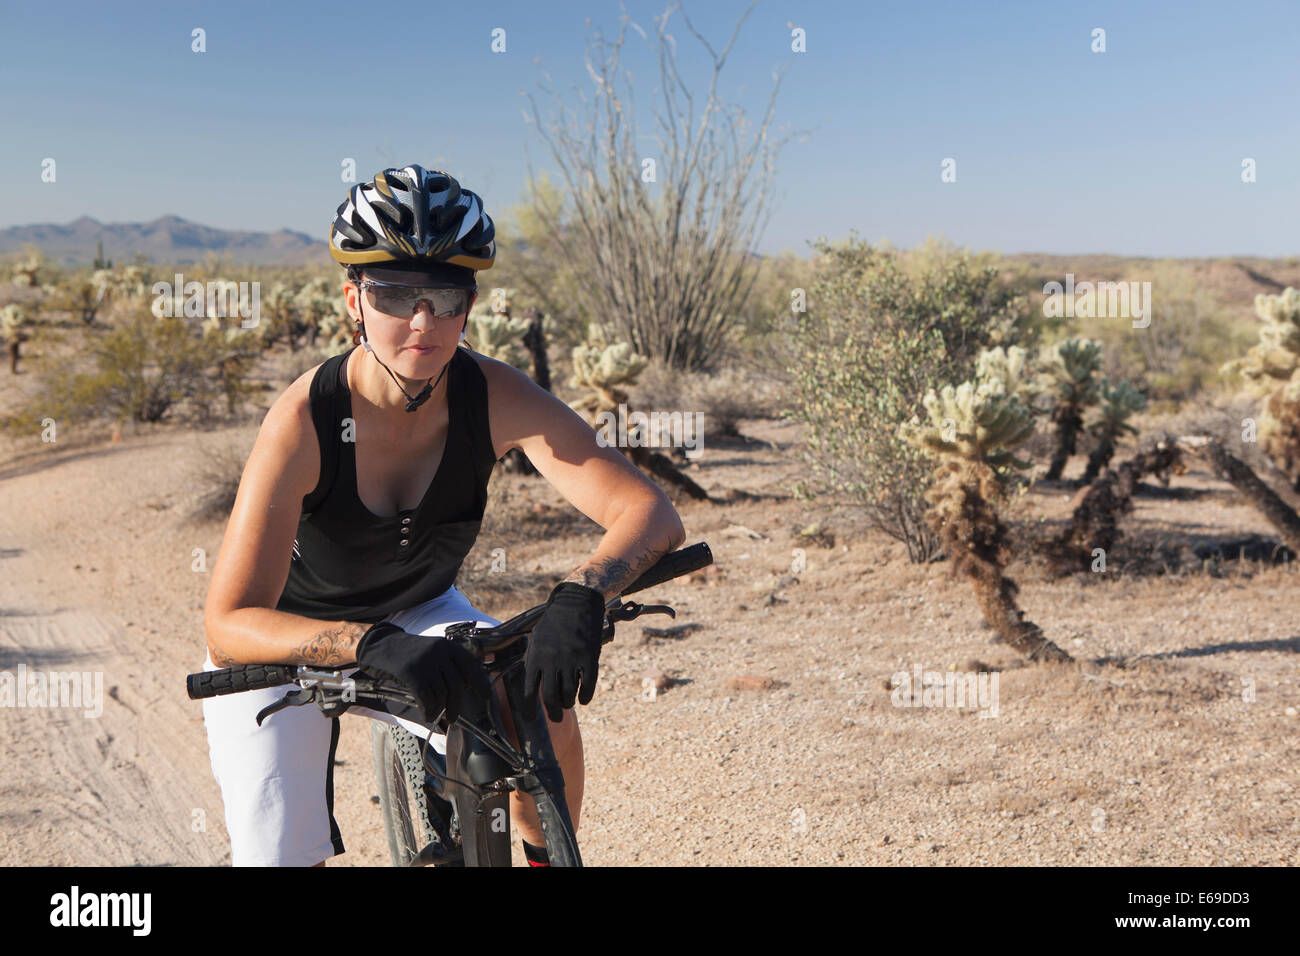 Frau Reiten Mountainbike in Wüste Stockfoto